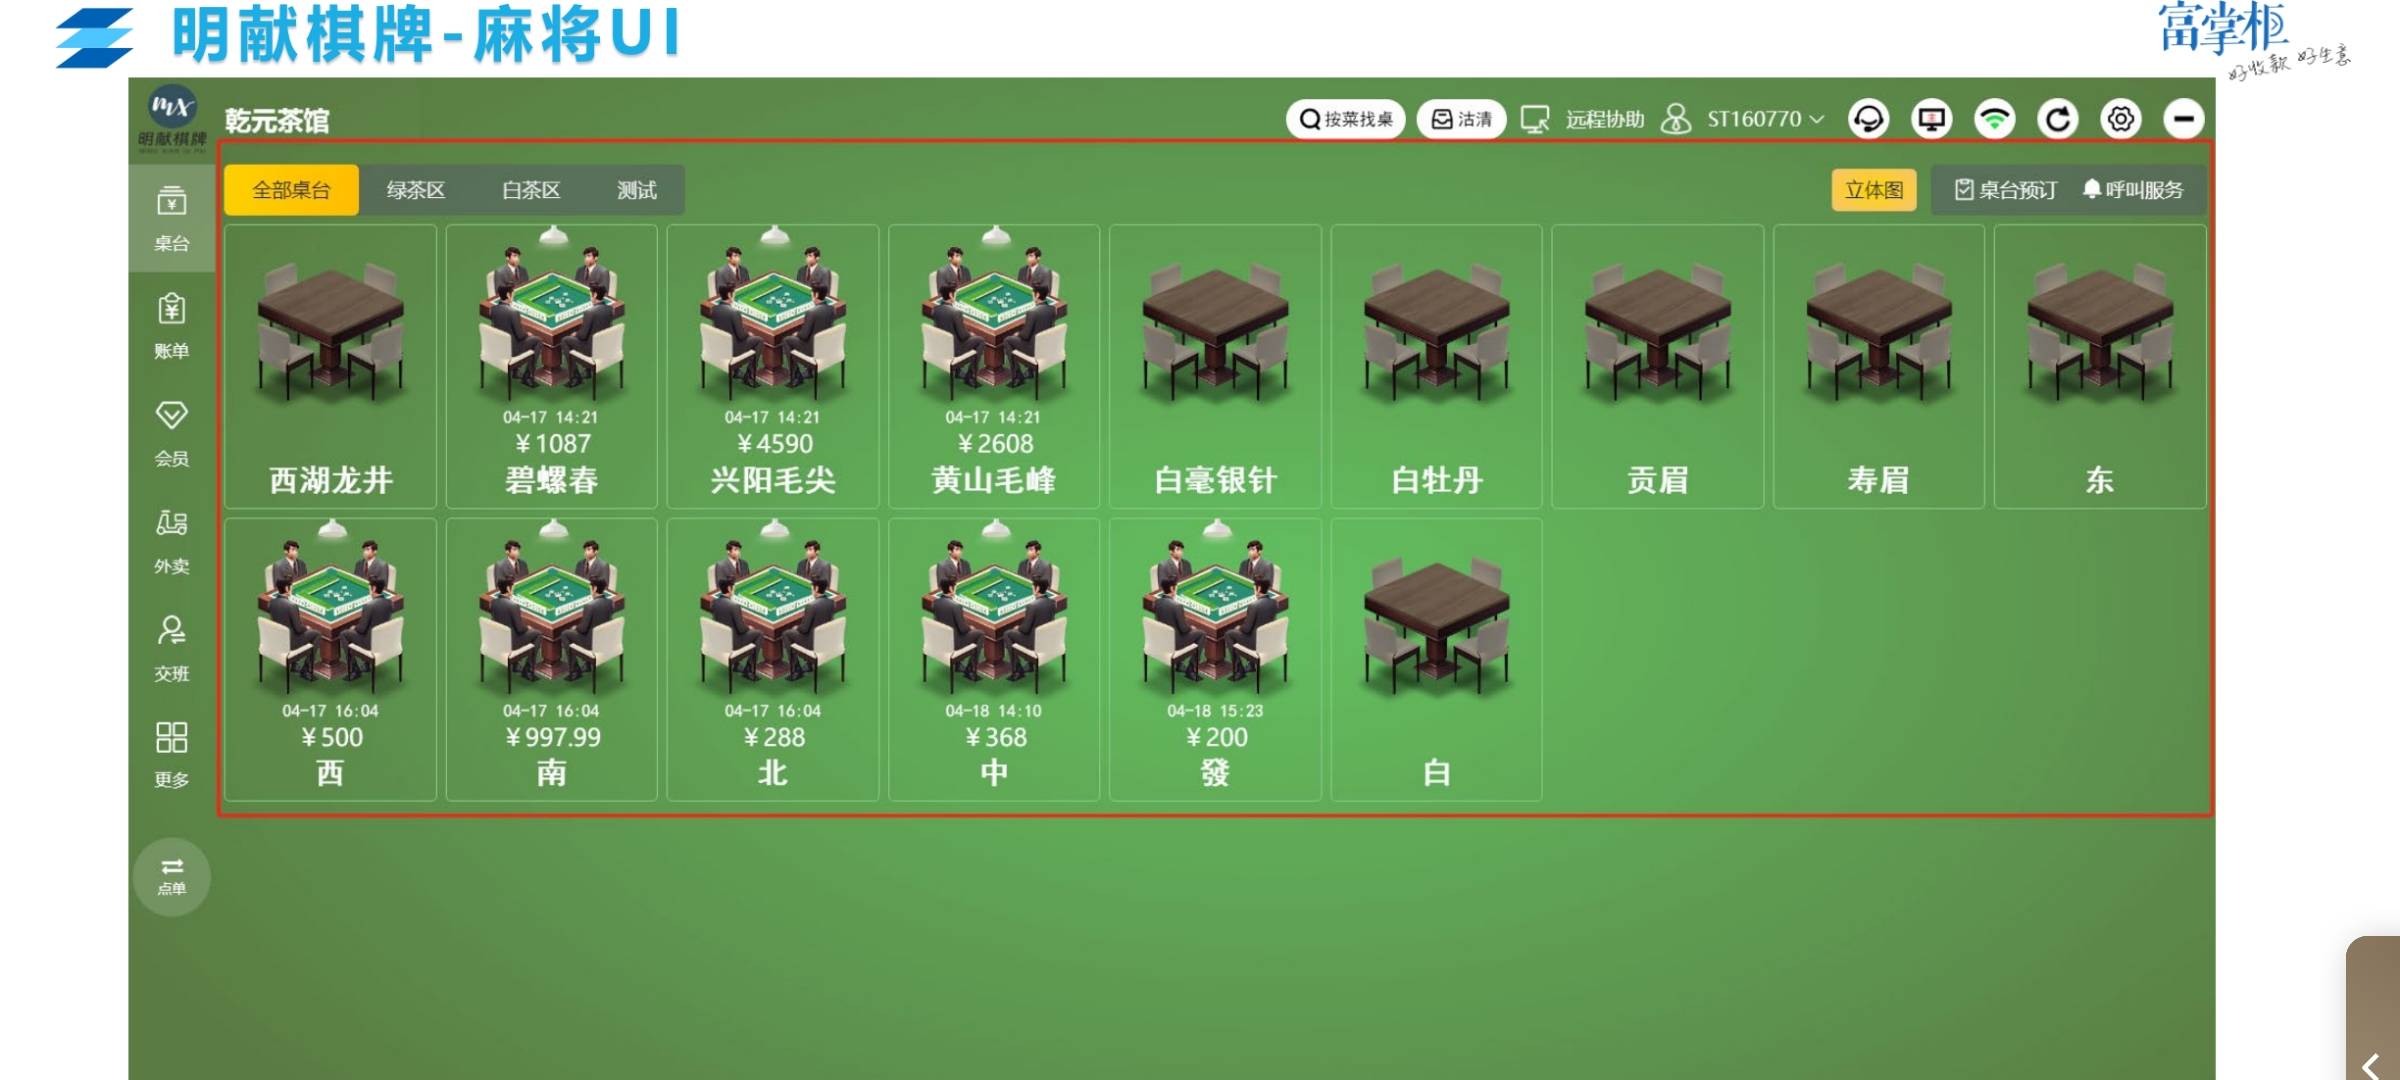 桌球:富掌柜收银系统功能适用包括麻将、茶楼、桌球、扑克等不同业态